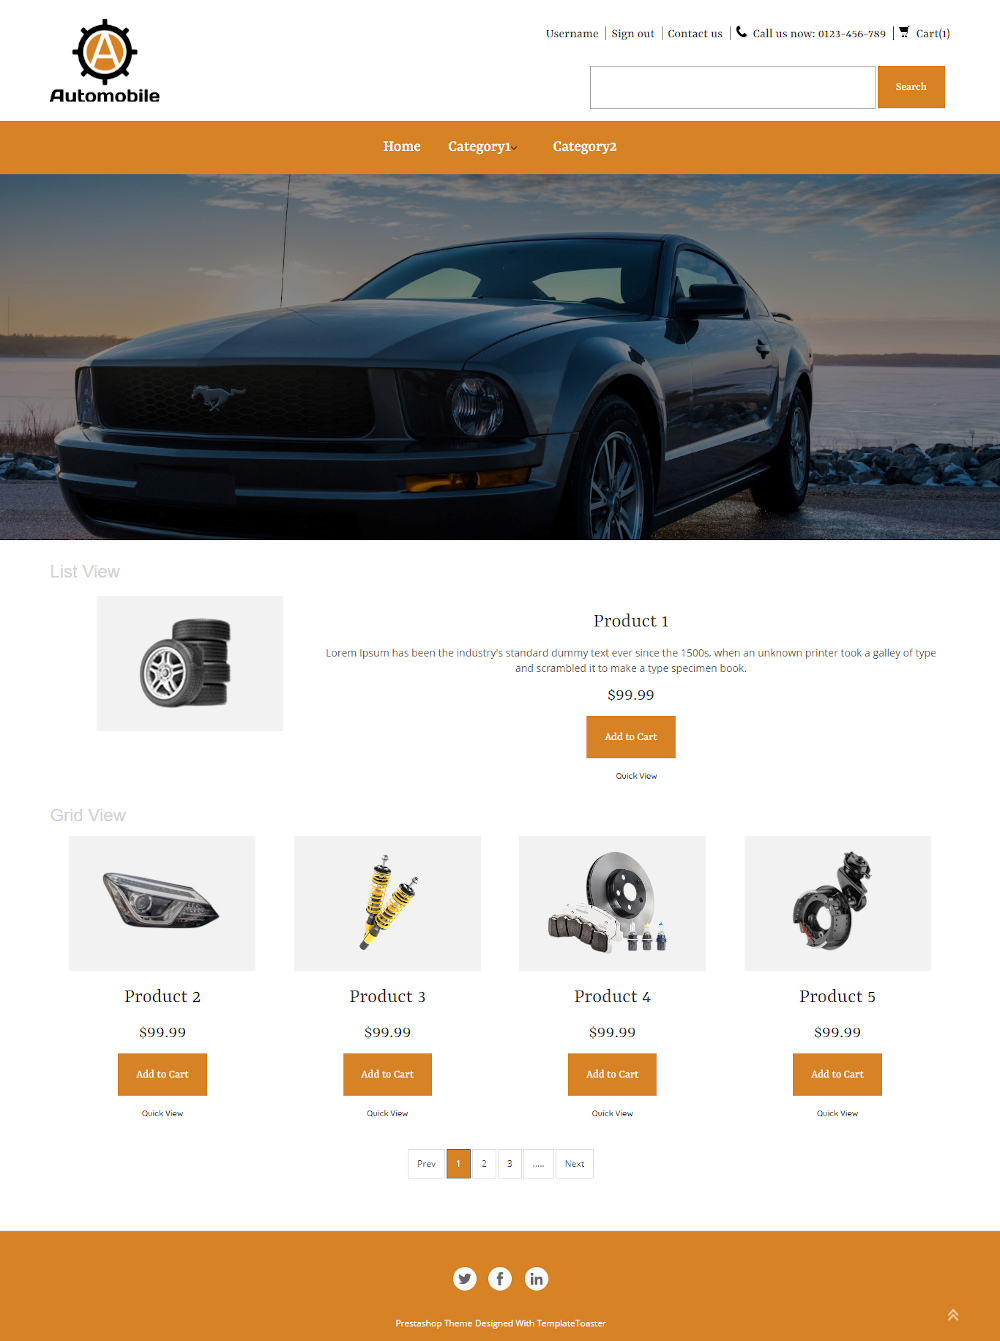 Automobile - Online Car Accessories Store PrestaShop Theme